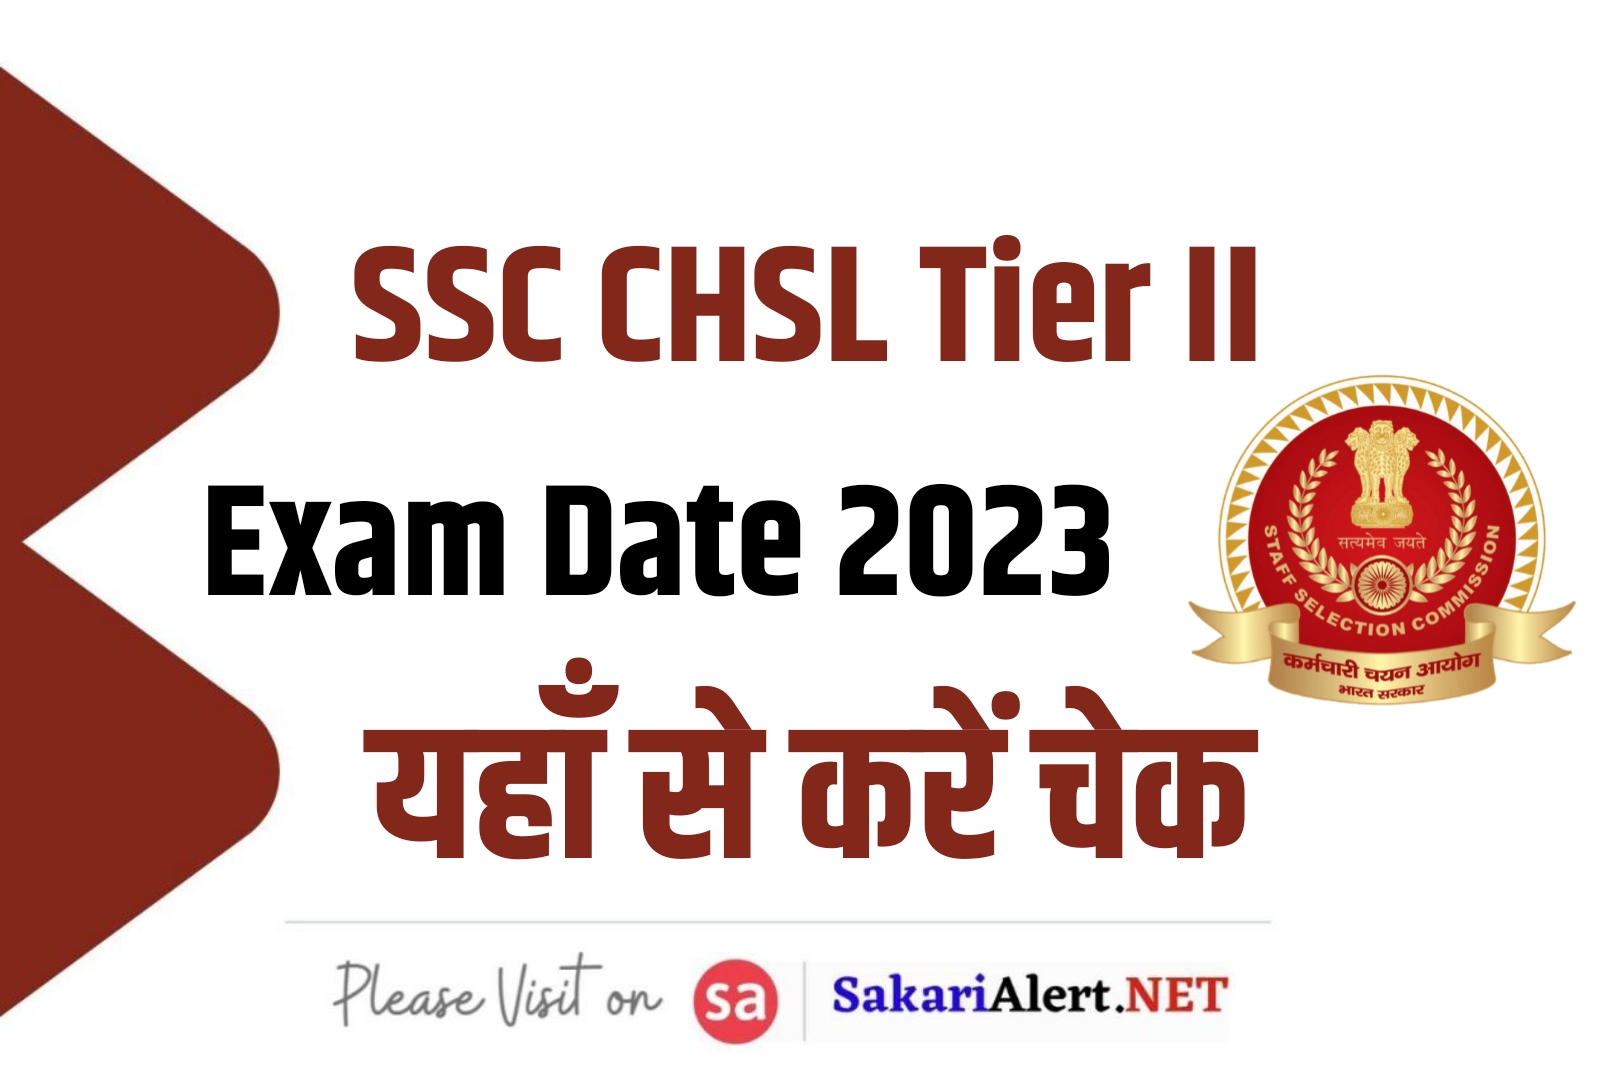 SSC CHSL Tier II Exam Date 2023